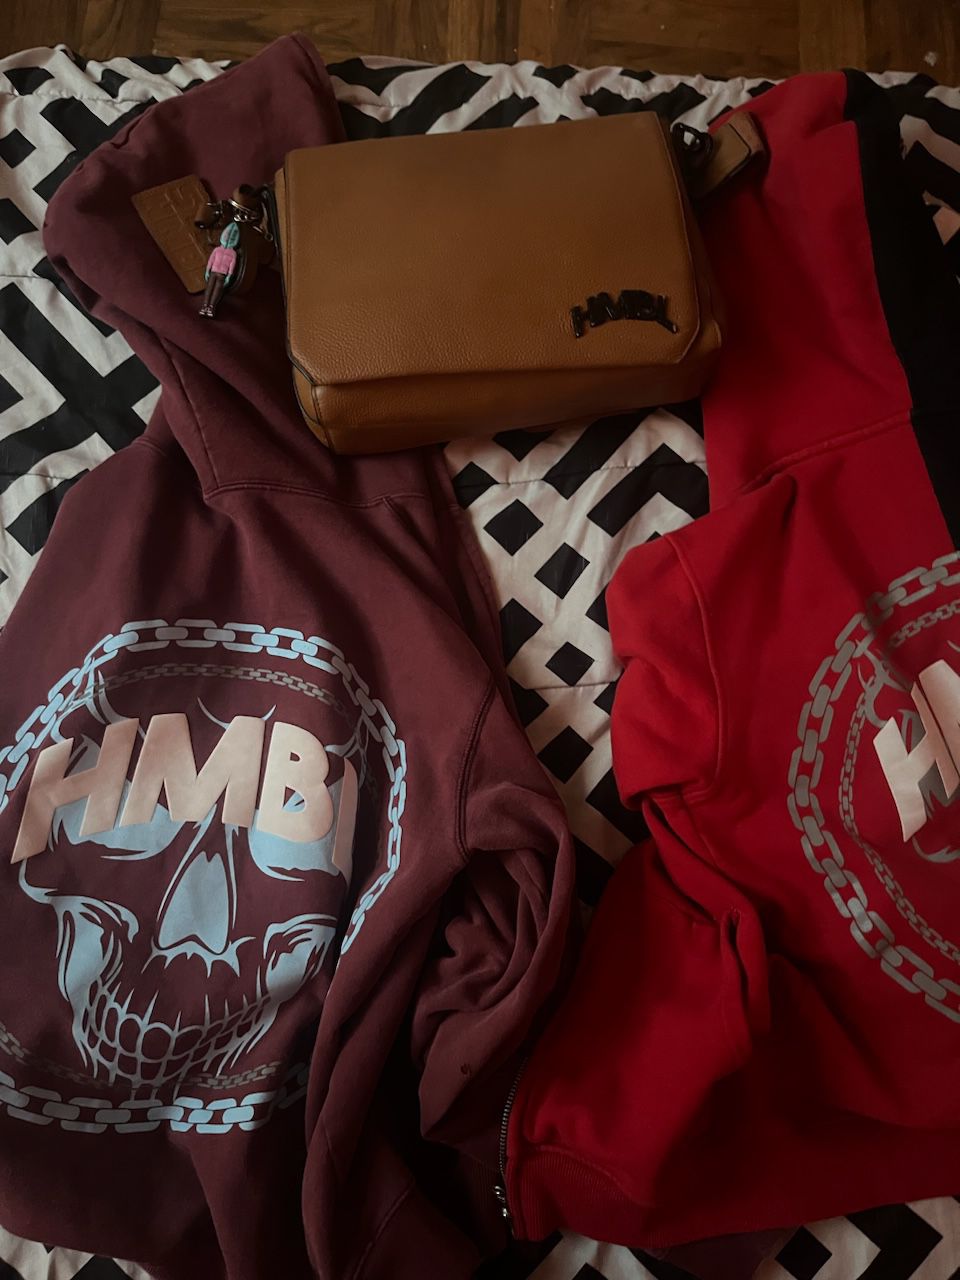 HMBL (Hoodies and Bag) 